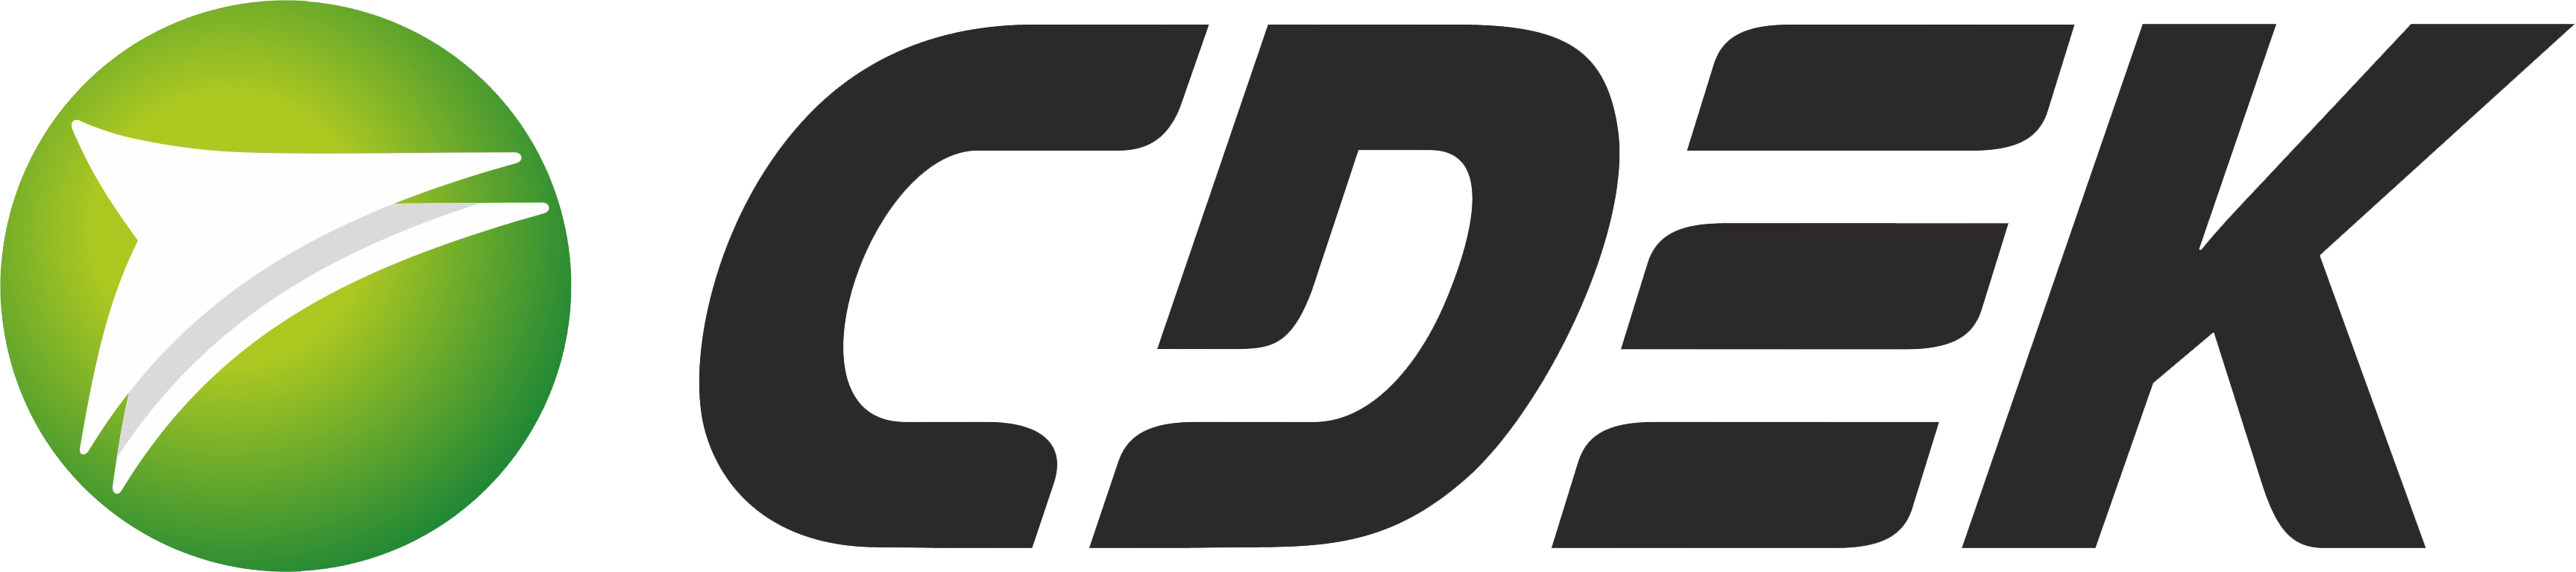 ТК СДЭК логотип. СДЭК логотип вектор. Транспортная компания СДЭК. СДЭК логотип прозрачный.